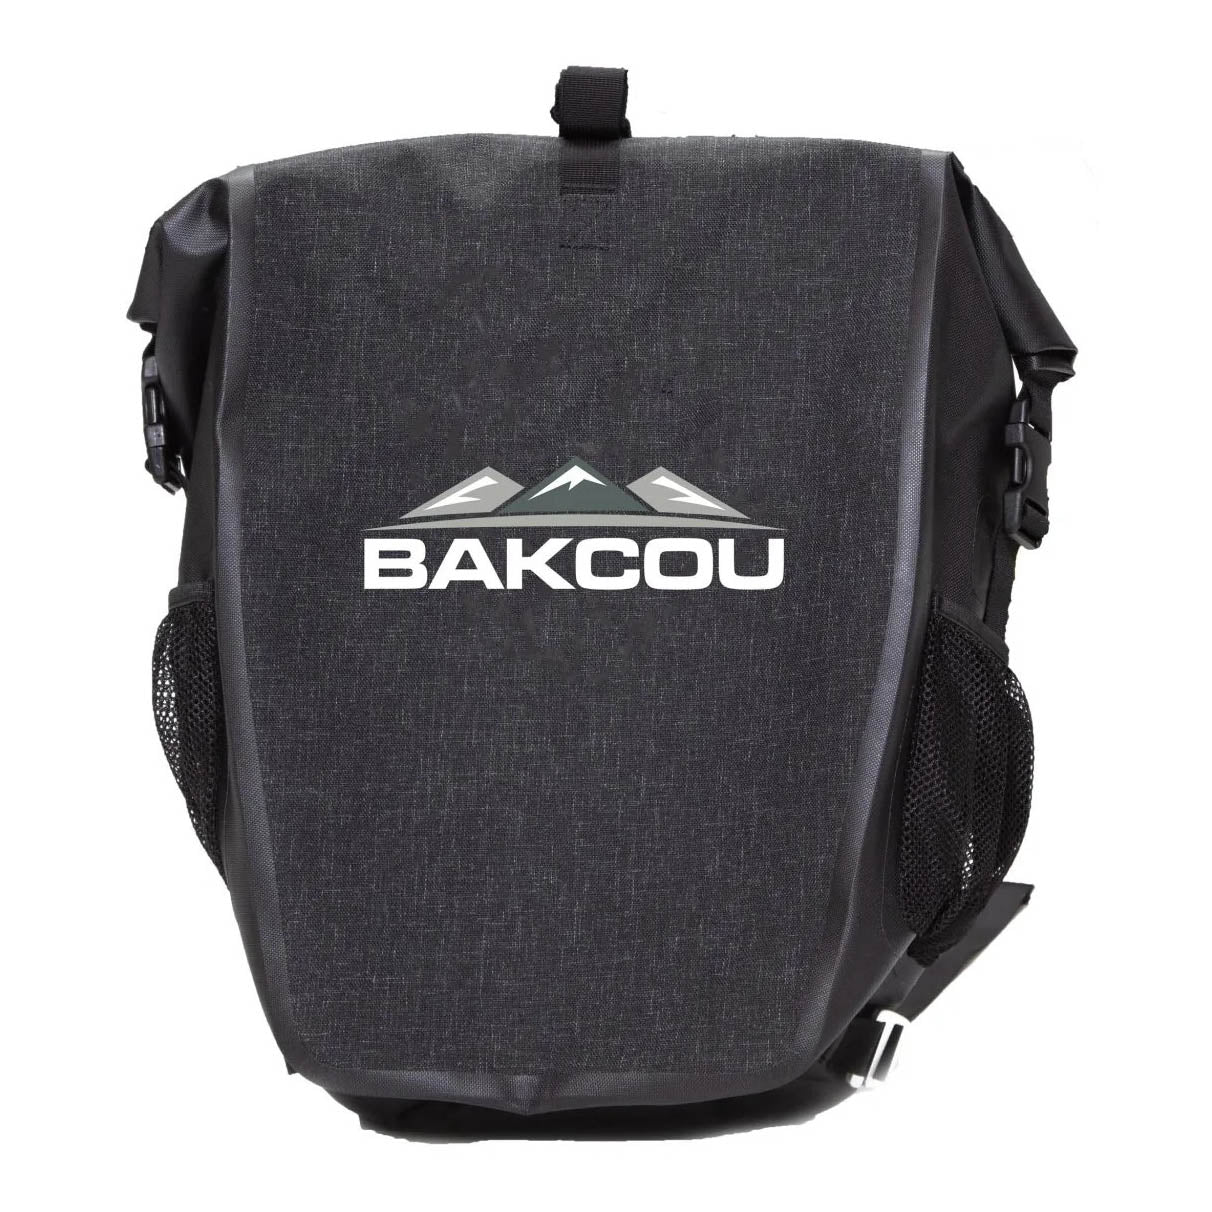 Bakcou Pannier Bags | MunroPowersports.com